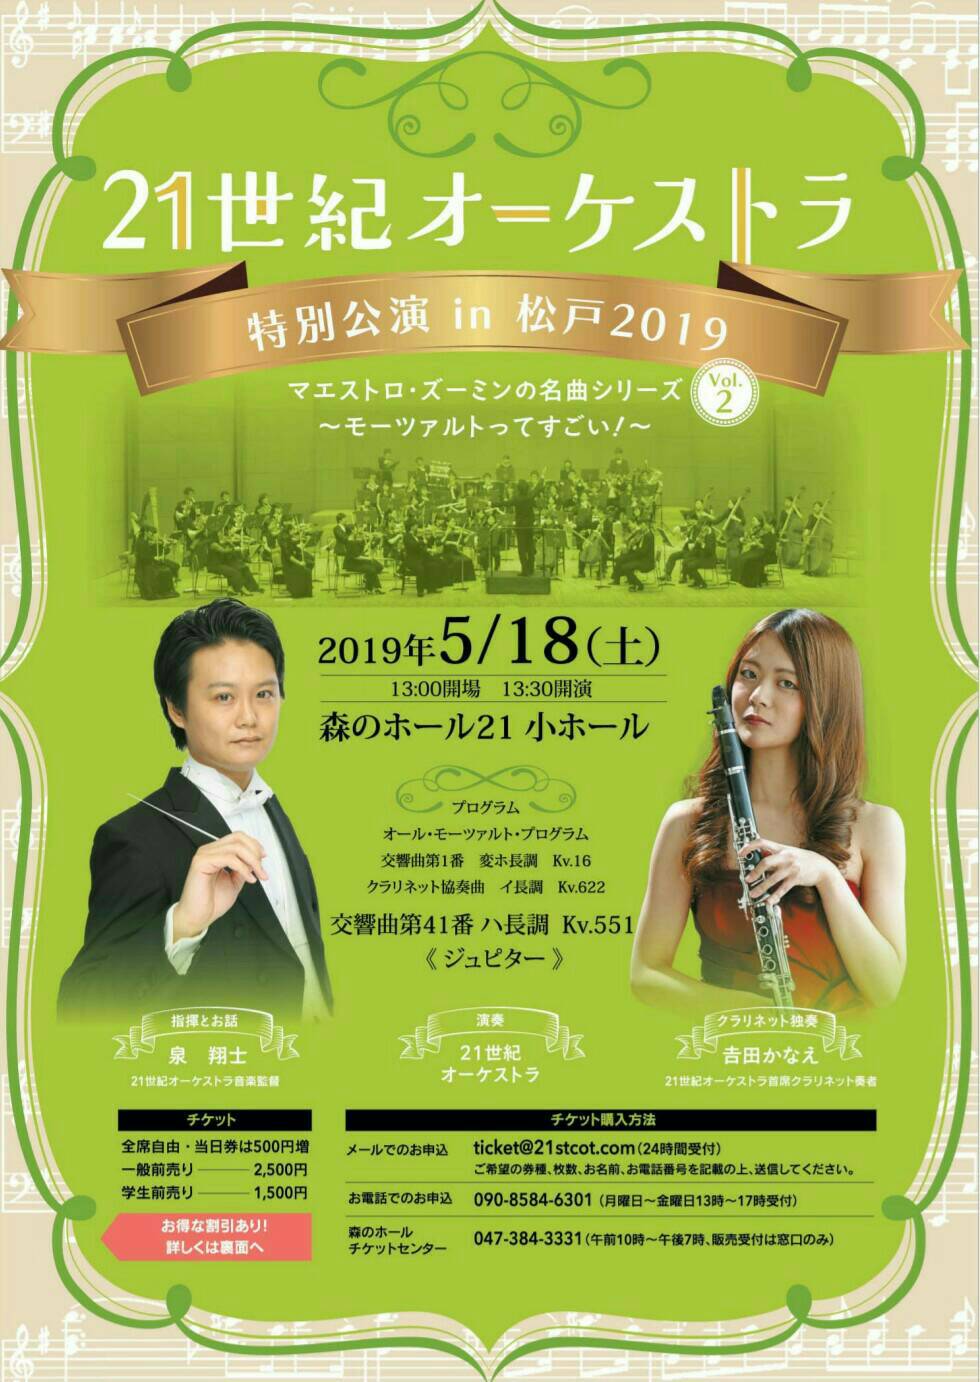 21st Century Orchestra Tokyo